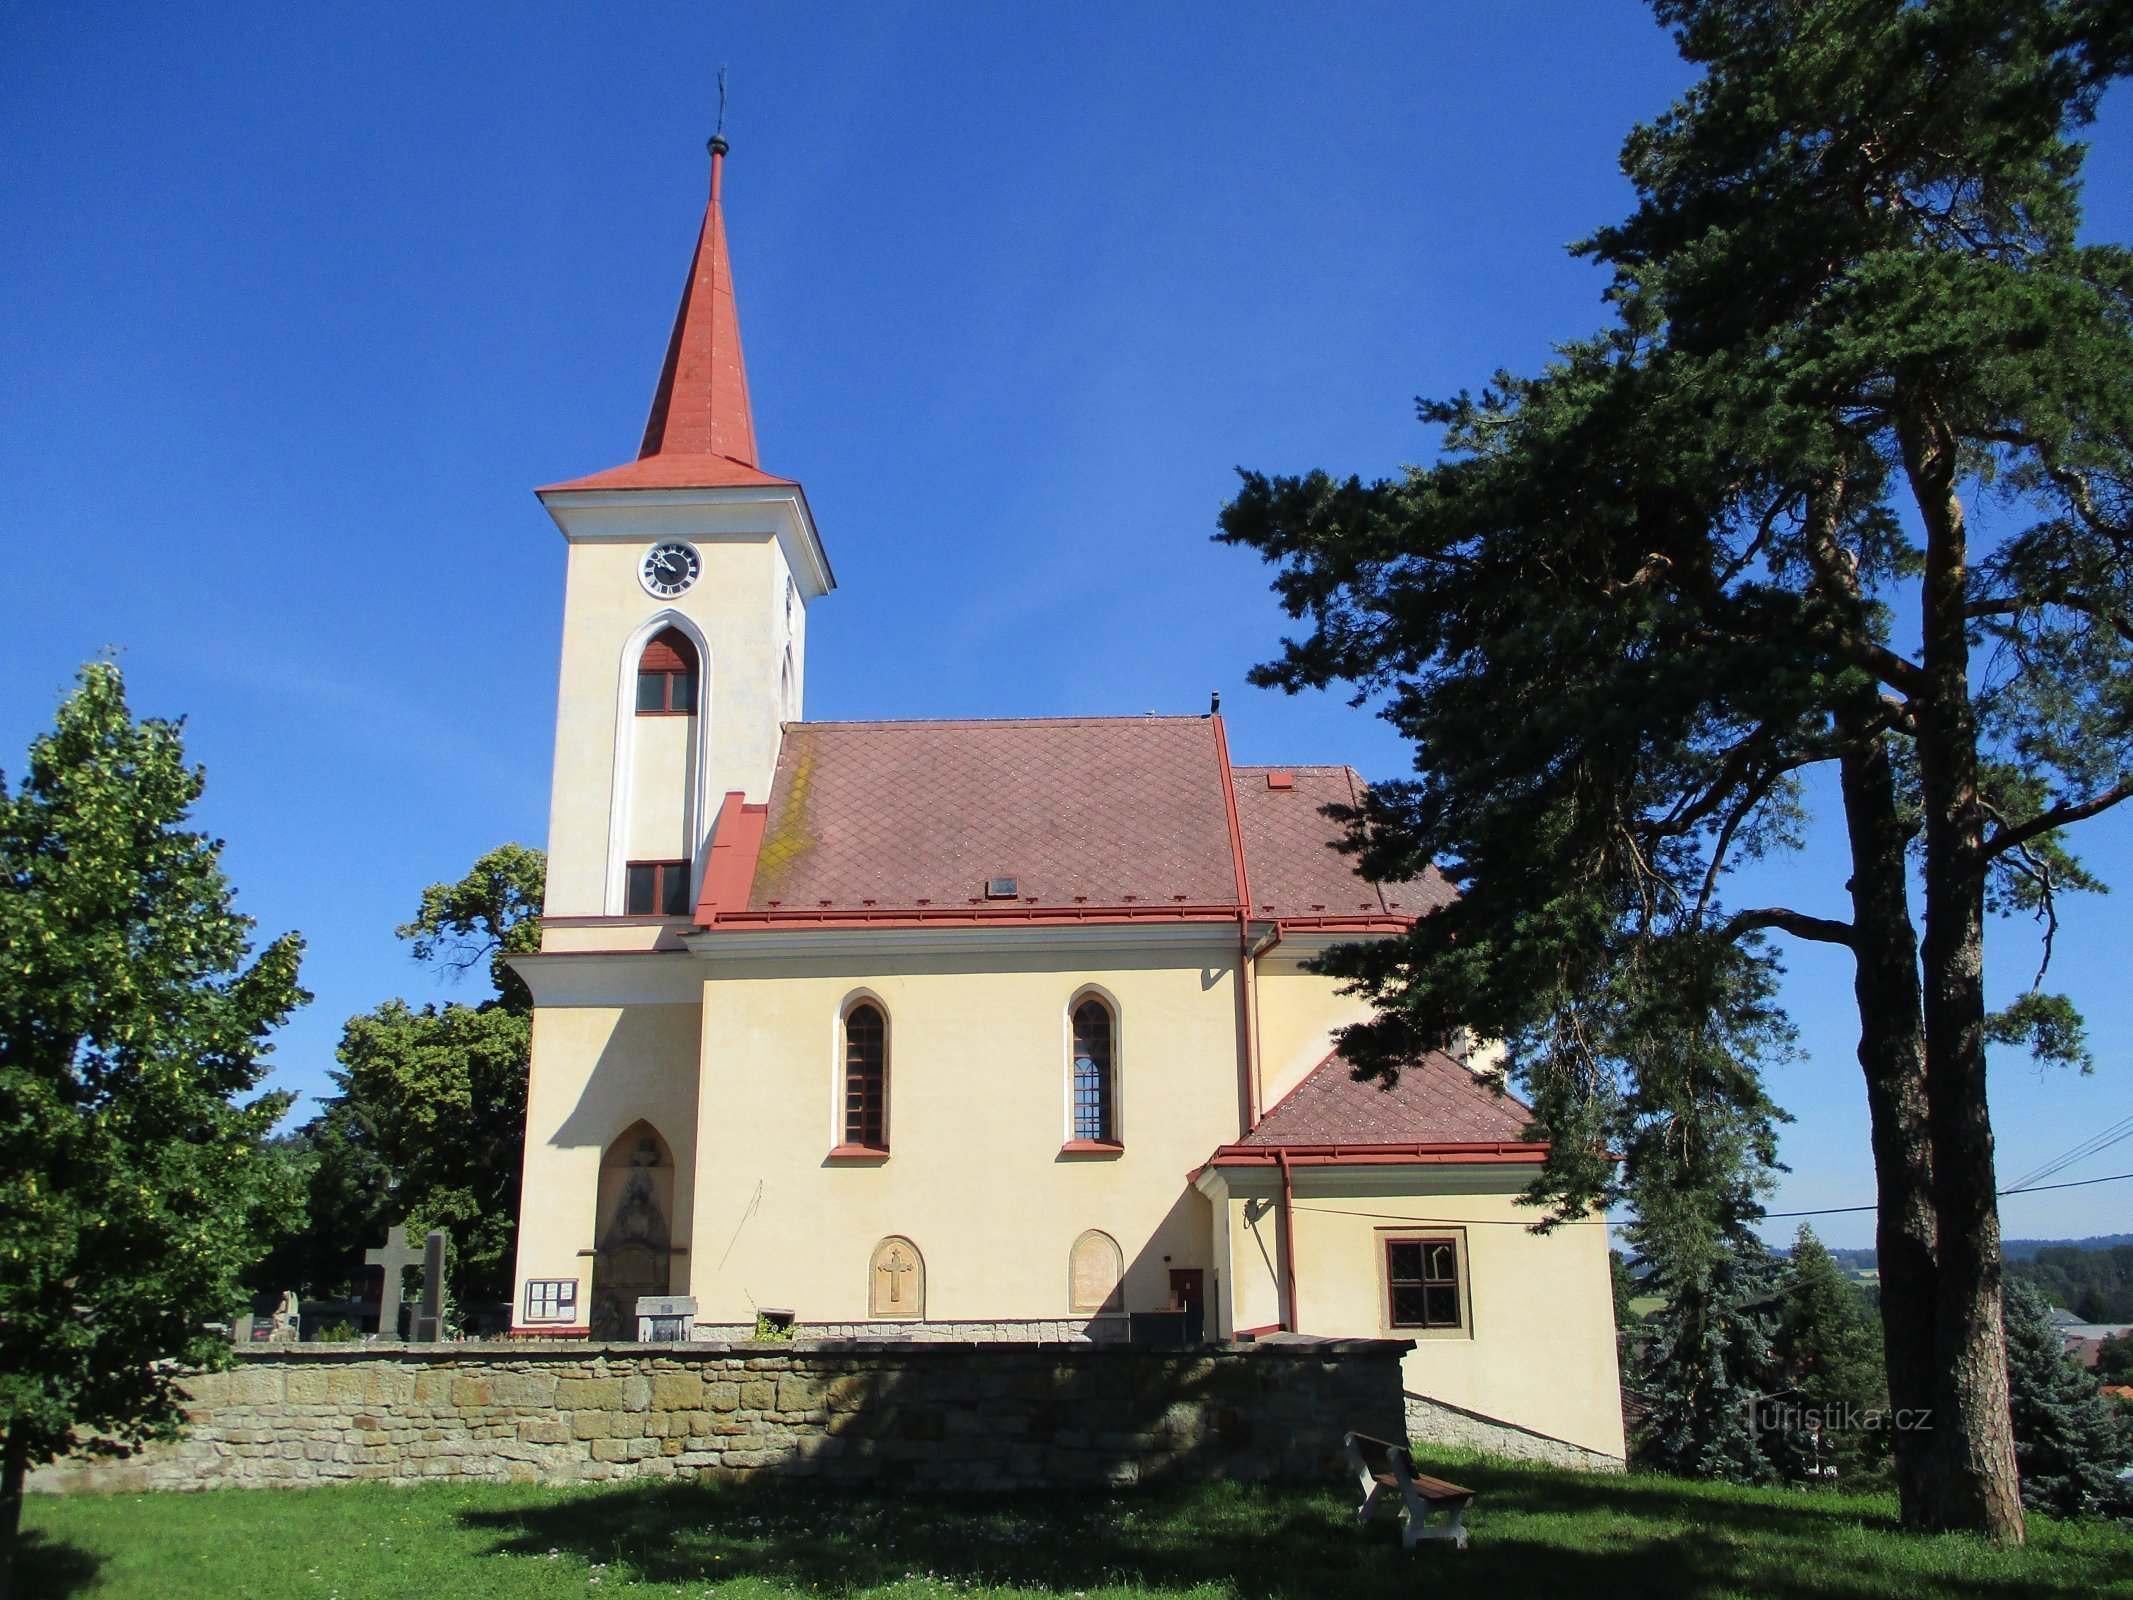 Förvandlingens kyrka (Velichovky)